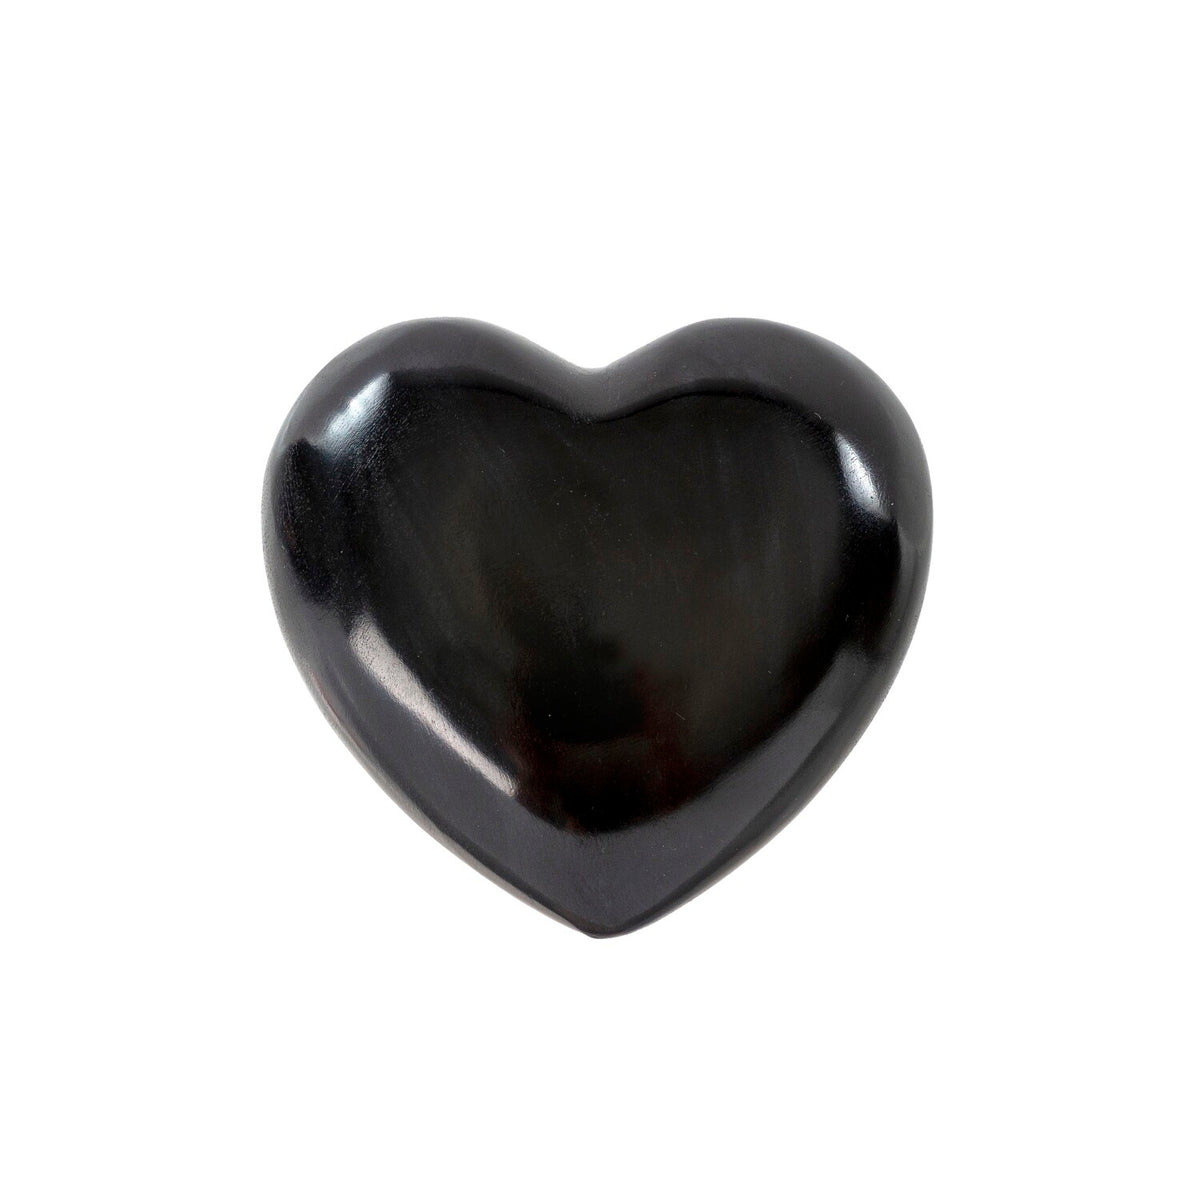 Soapstone Heart Large Black